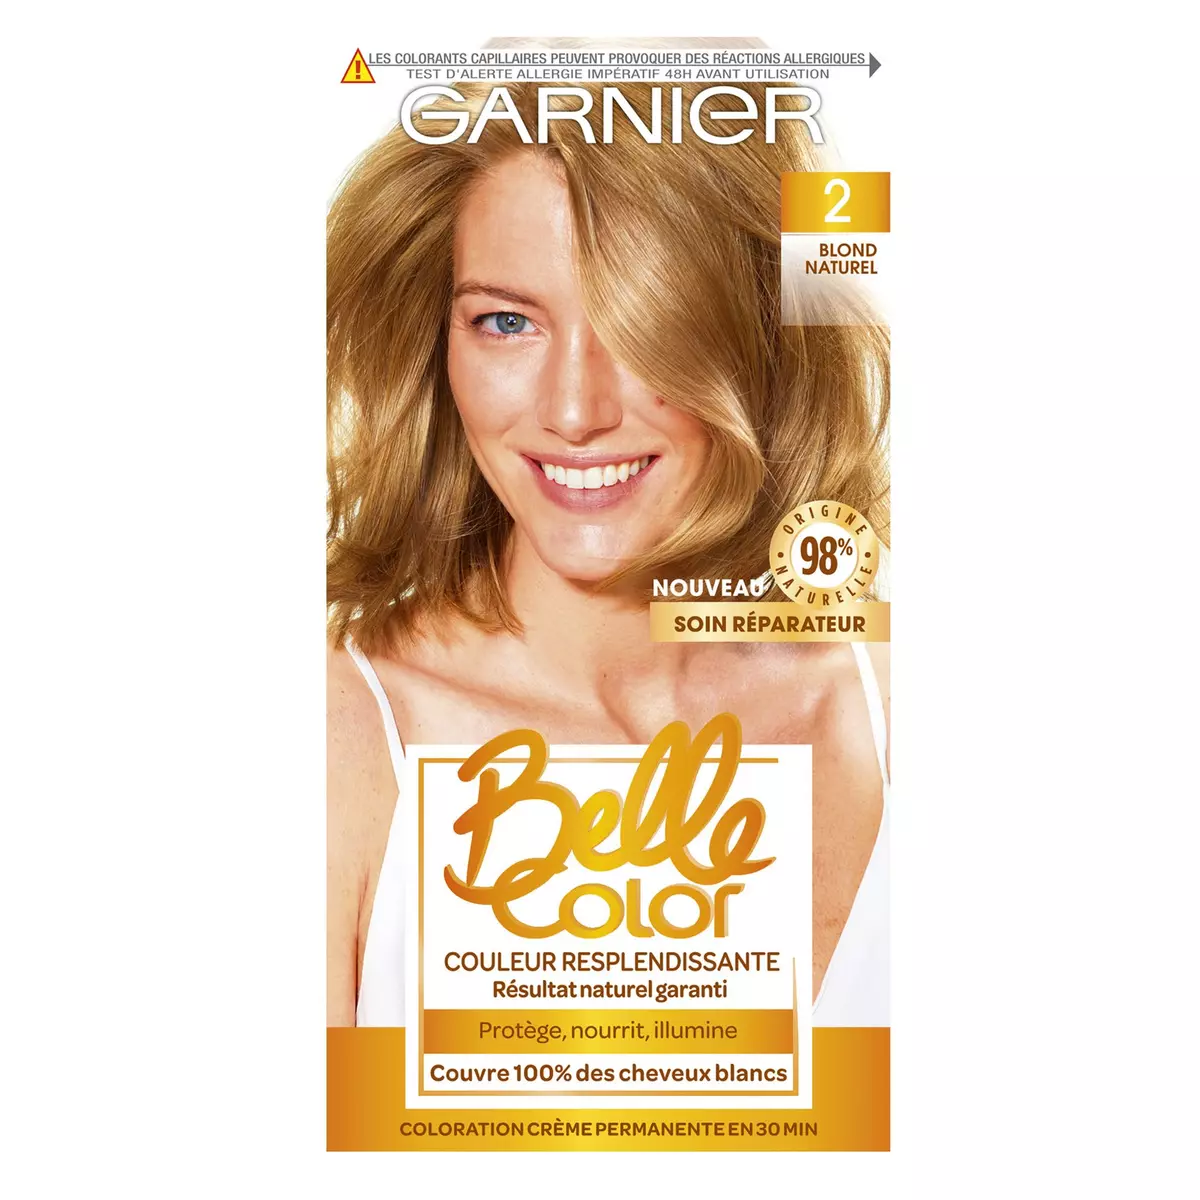 GARNIER Belle color coloration permanente 02 blond 3 produits 1 kit